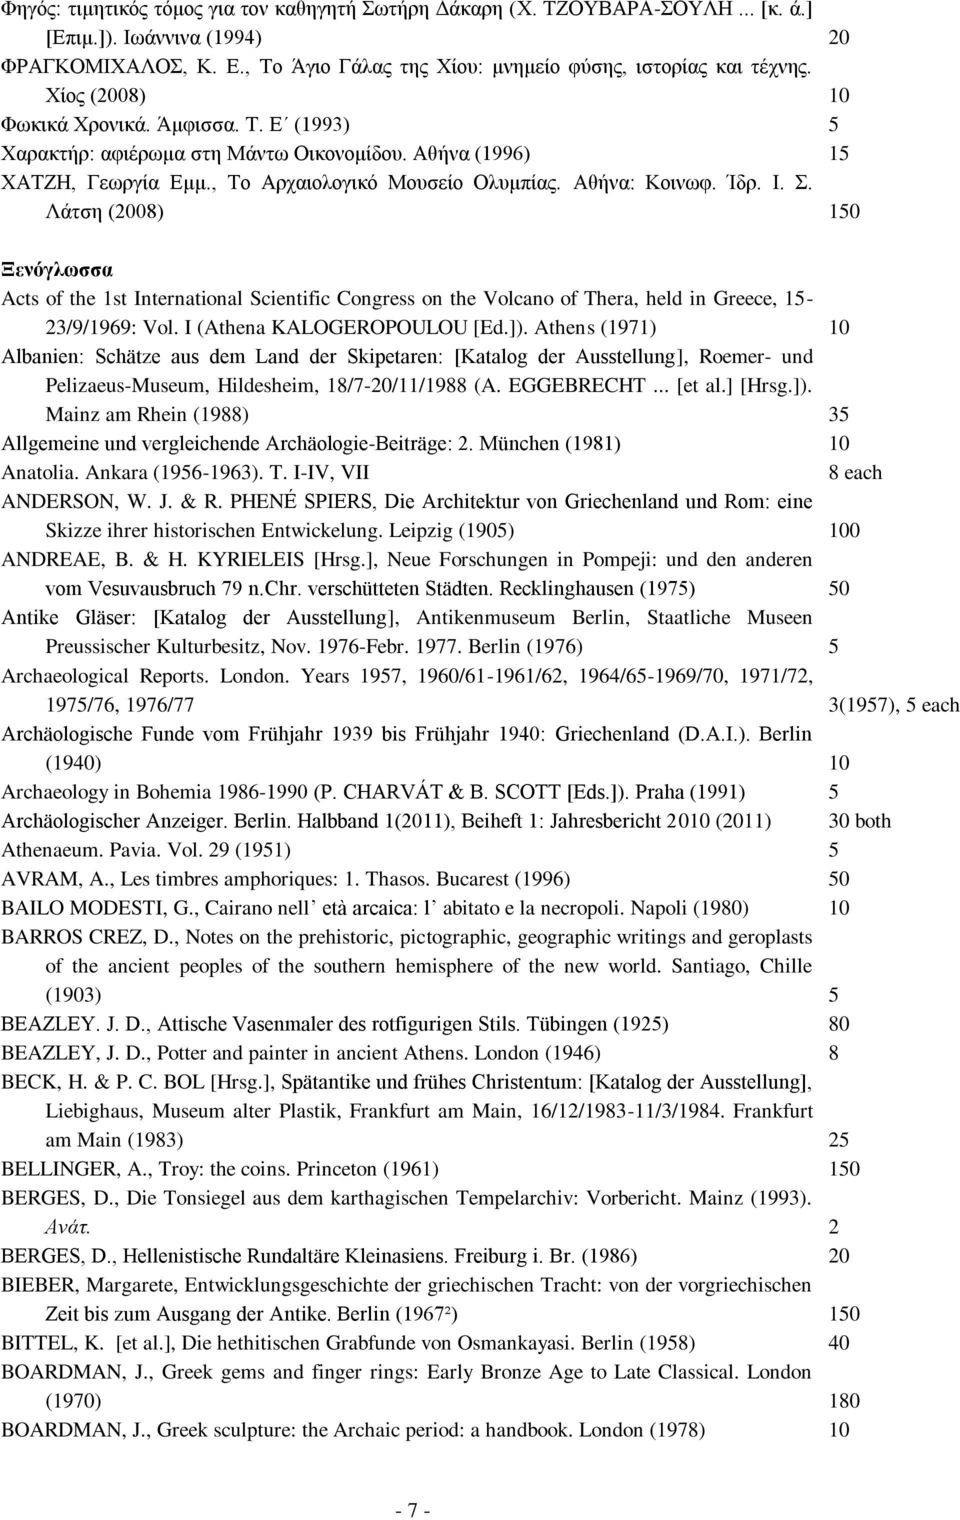 Λάτση (2008) 150 Ξενόγλωσσα Acts of the 1st International Scientific Congress on the Volcano of Thera, held in Greece, 15-23/9/1969: Vol. I (Athena KALOGEROPOULOU [Ed.]).